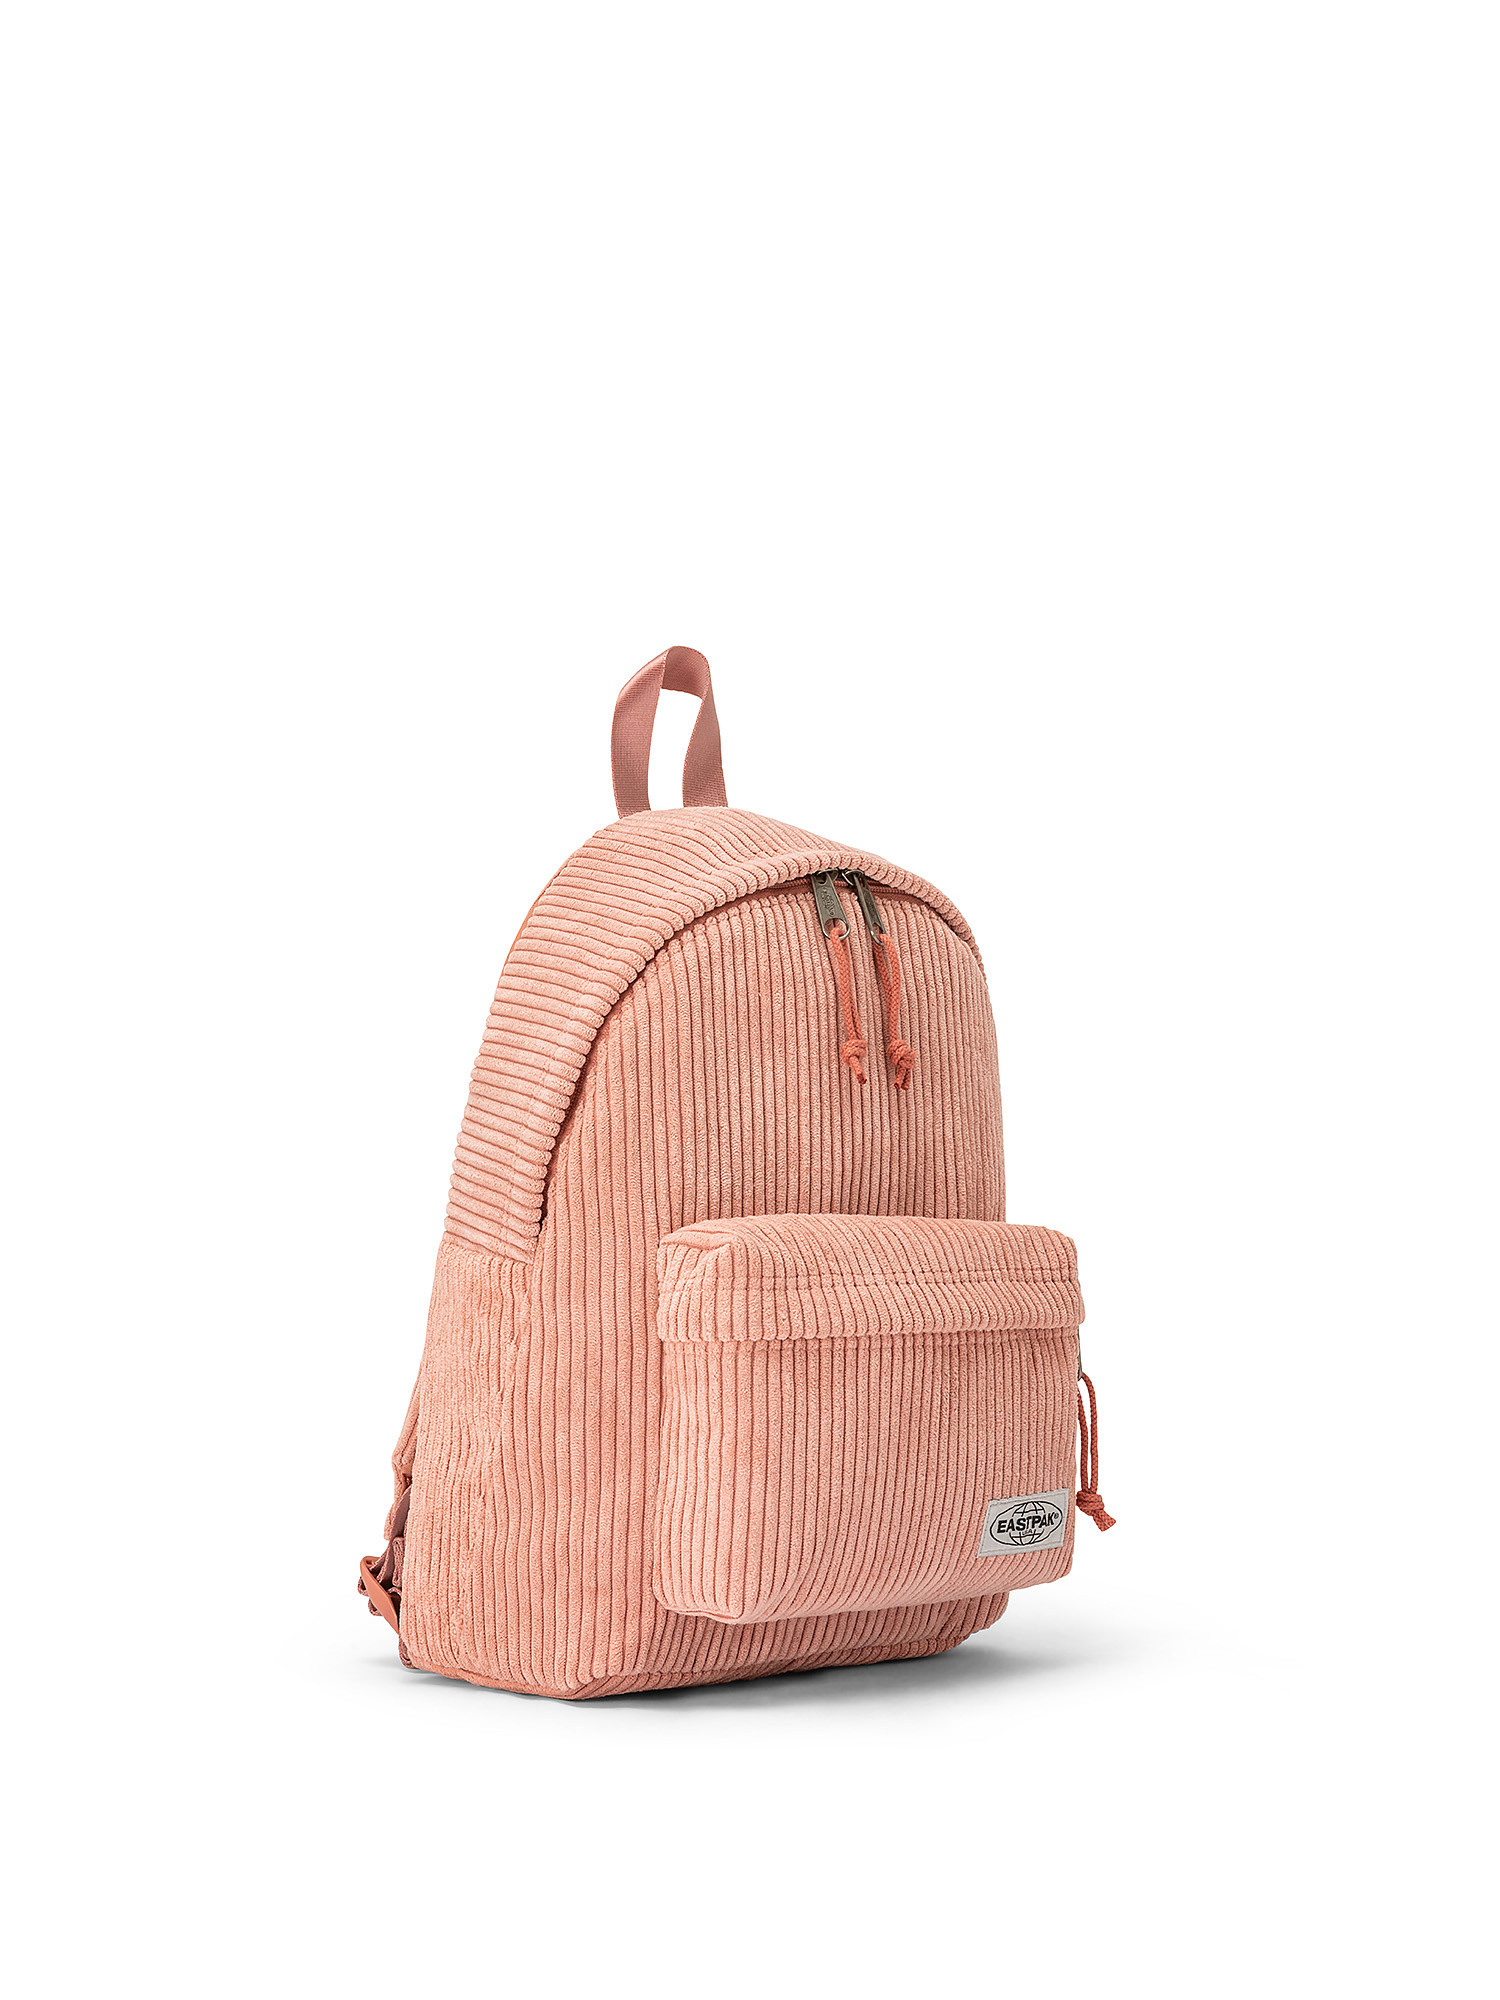 Mini backpack with tablet pocket, Pink, large image number 1